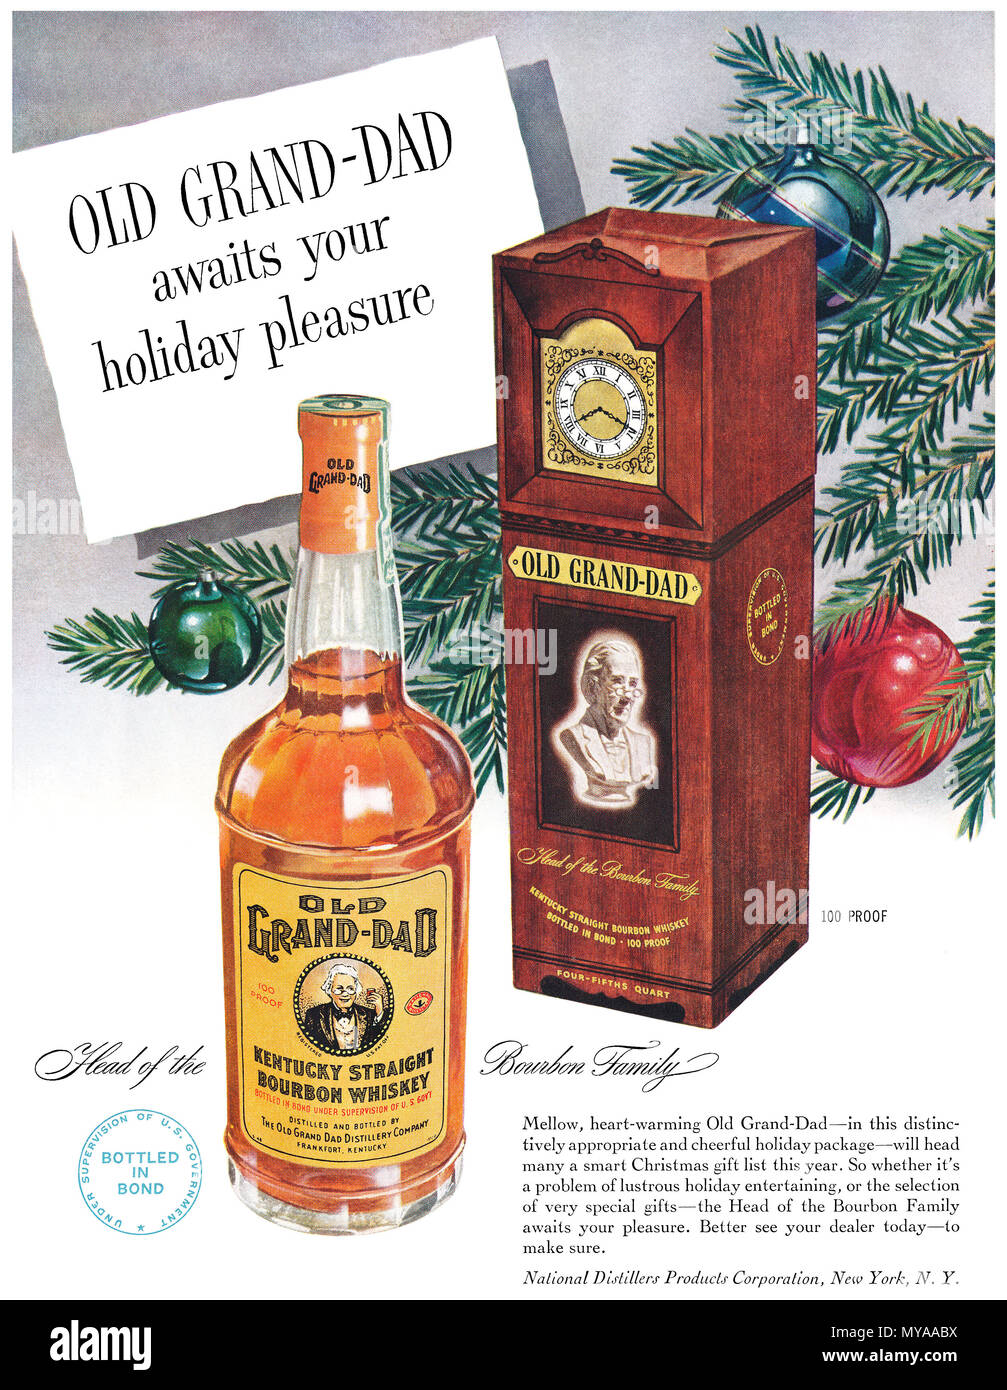 1950 publicité pour Noël américain Grand-Dad vieux Kentucky Straight Bourbon Whiskey. Banque D'Images